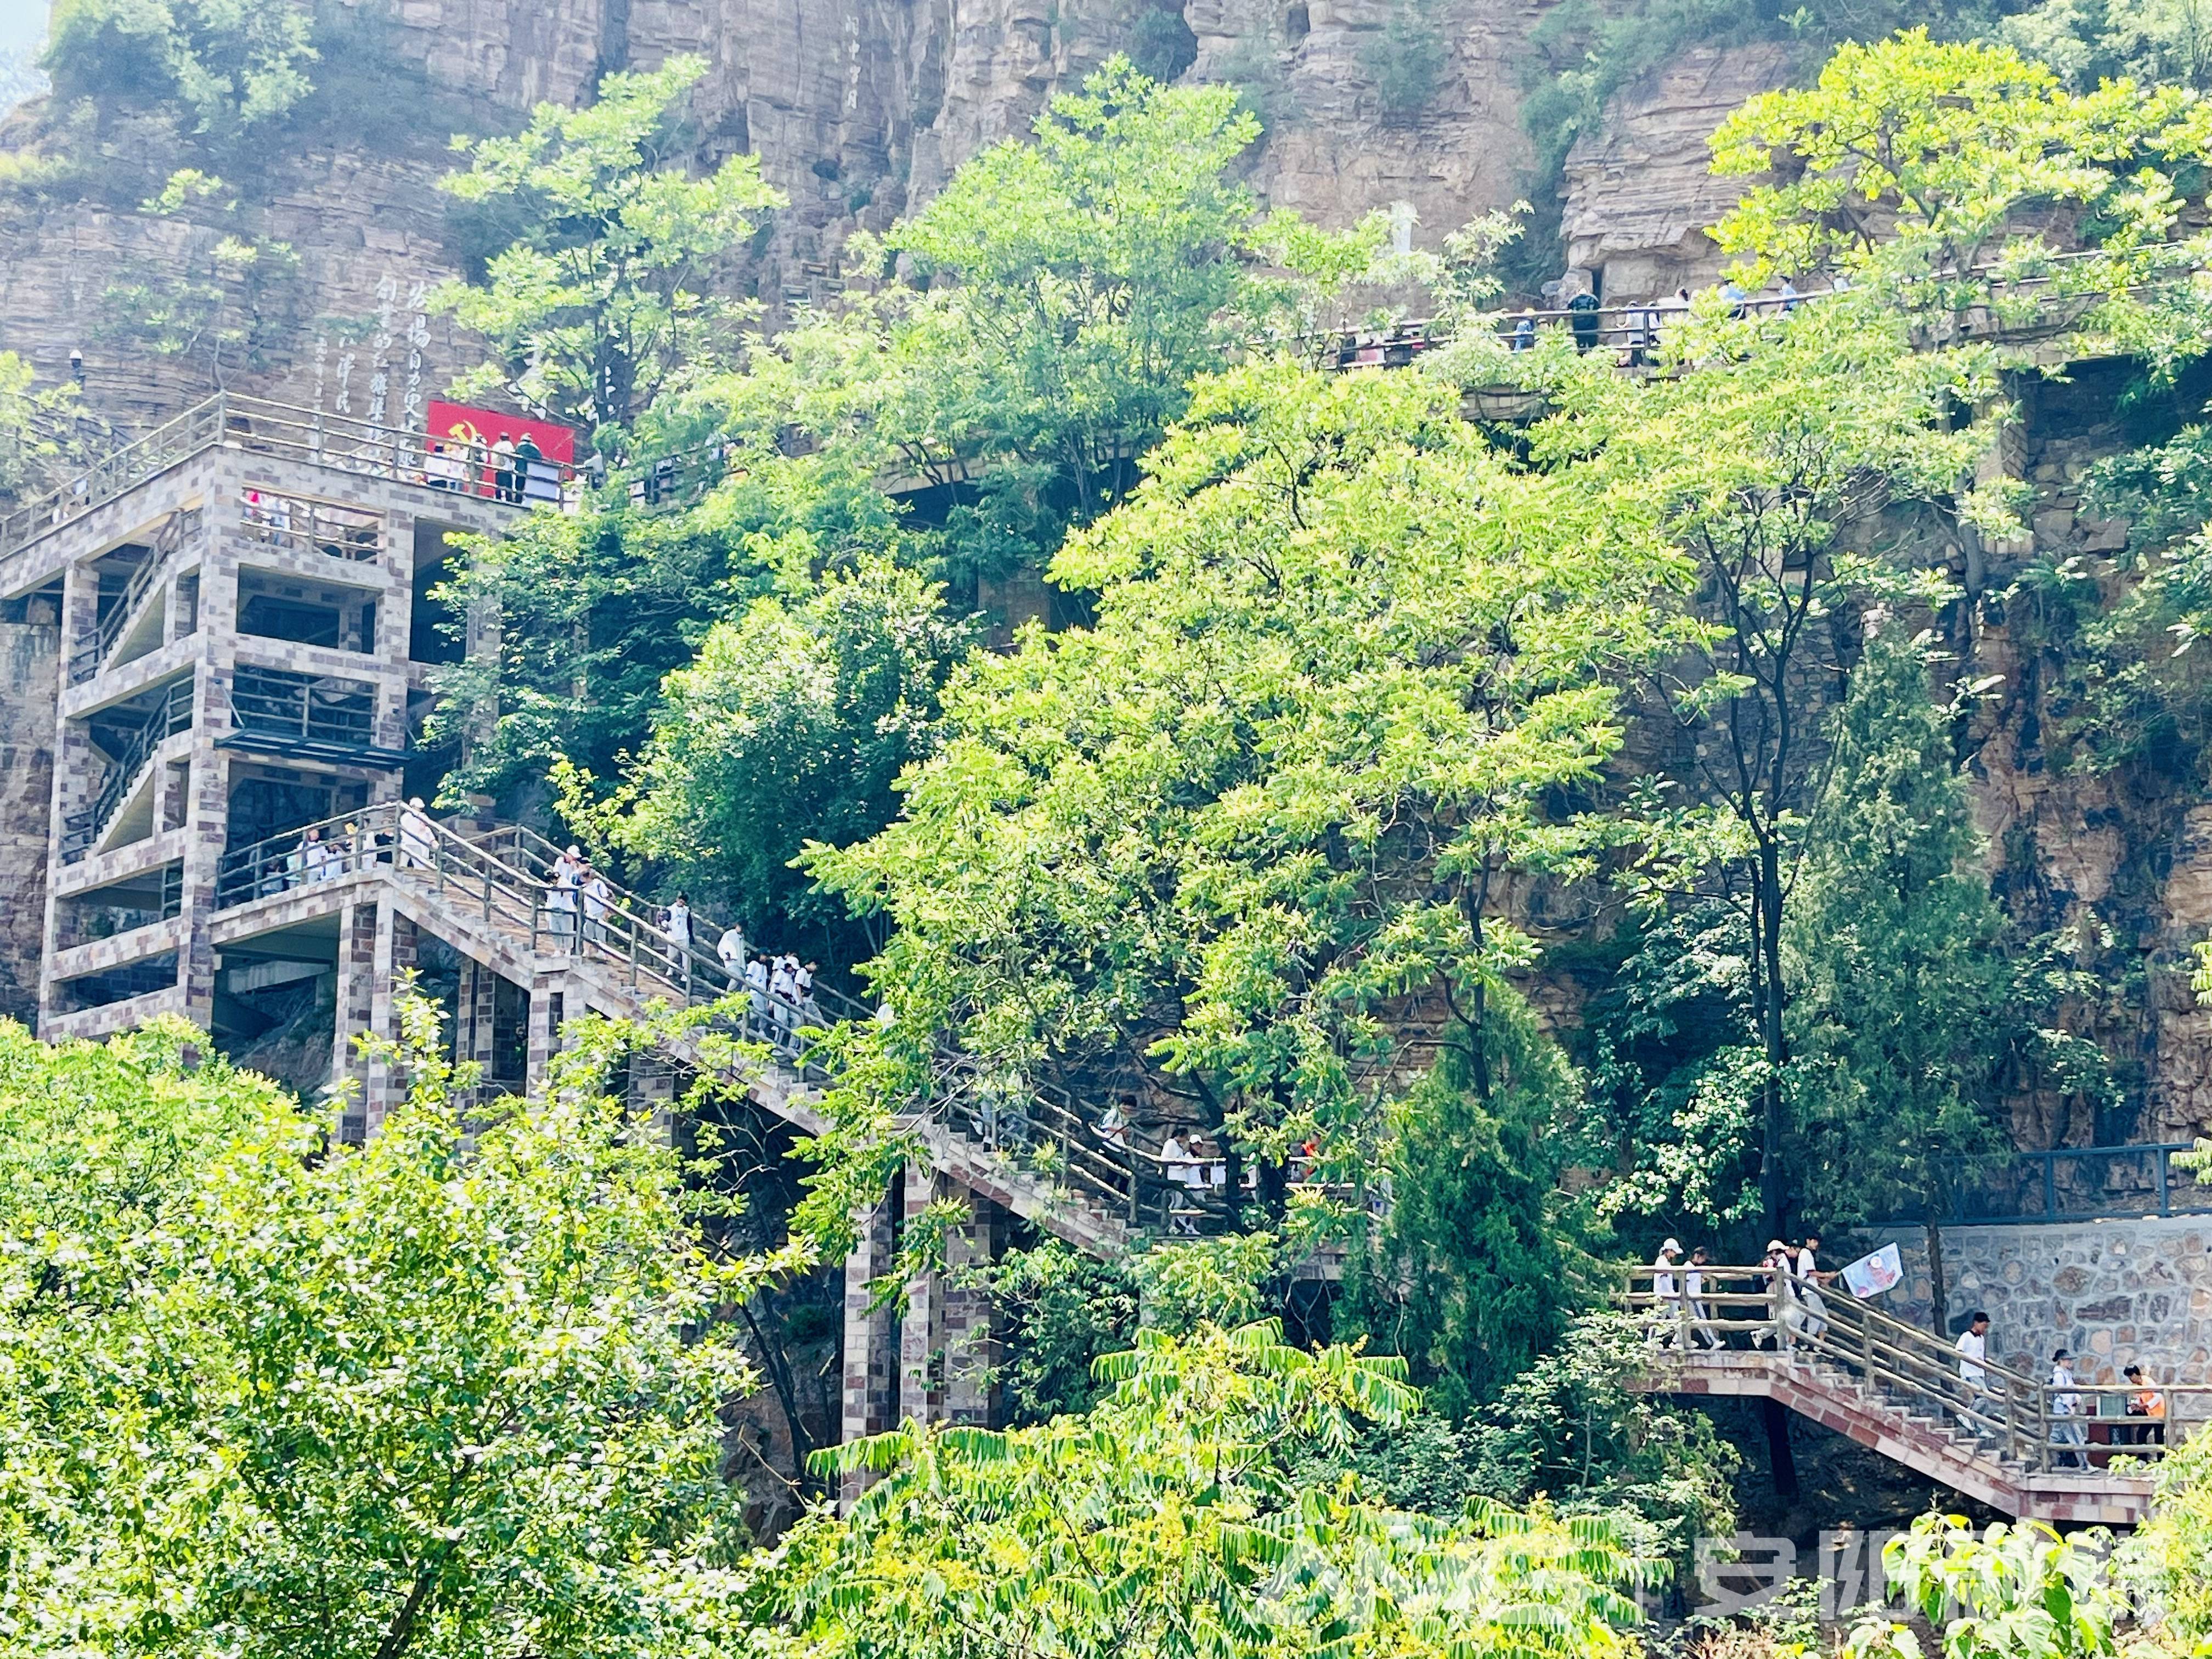 第14个中国旅游日:安阳市林州红旗渠青年洞景区游客络绎不绝